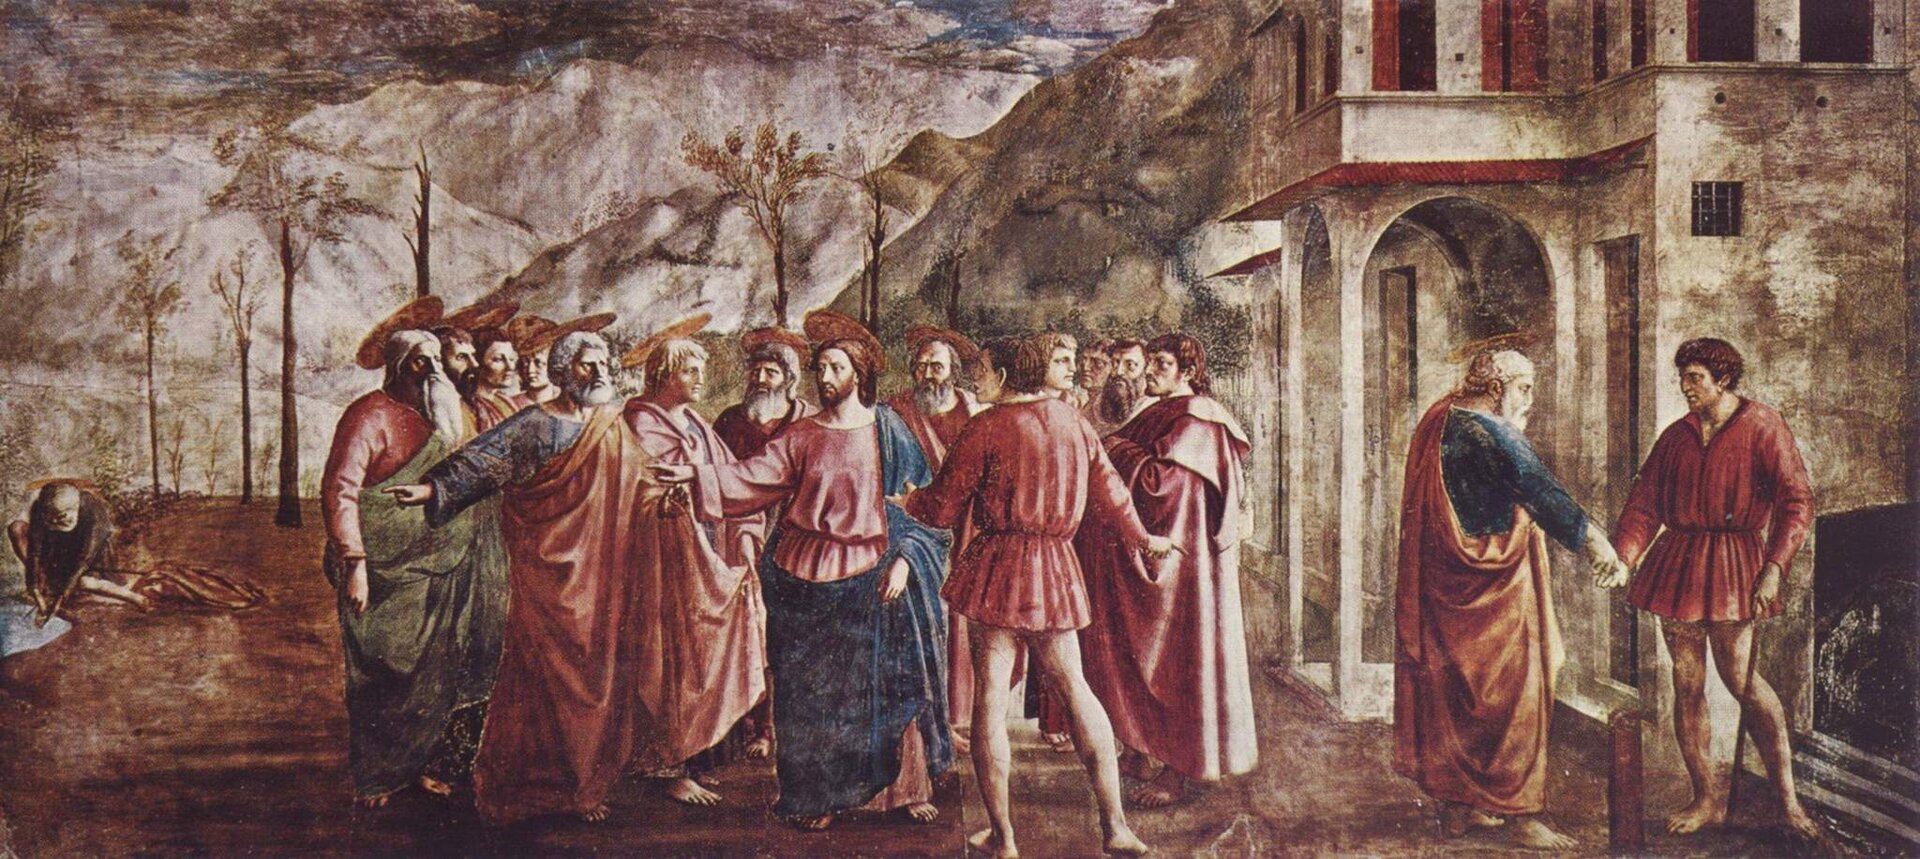 Ilustracja przedstawia obraz Masaccia „Grosz czynszowy”. Na obrazie widzimy kilkunastu rozmawiających mężczyzn. Ubrani są w kolorowe szaty. Obok znajdują się mury budynku. W tle widoczny jest krajobraz rozciągających się gór.